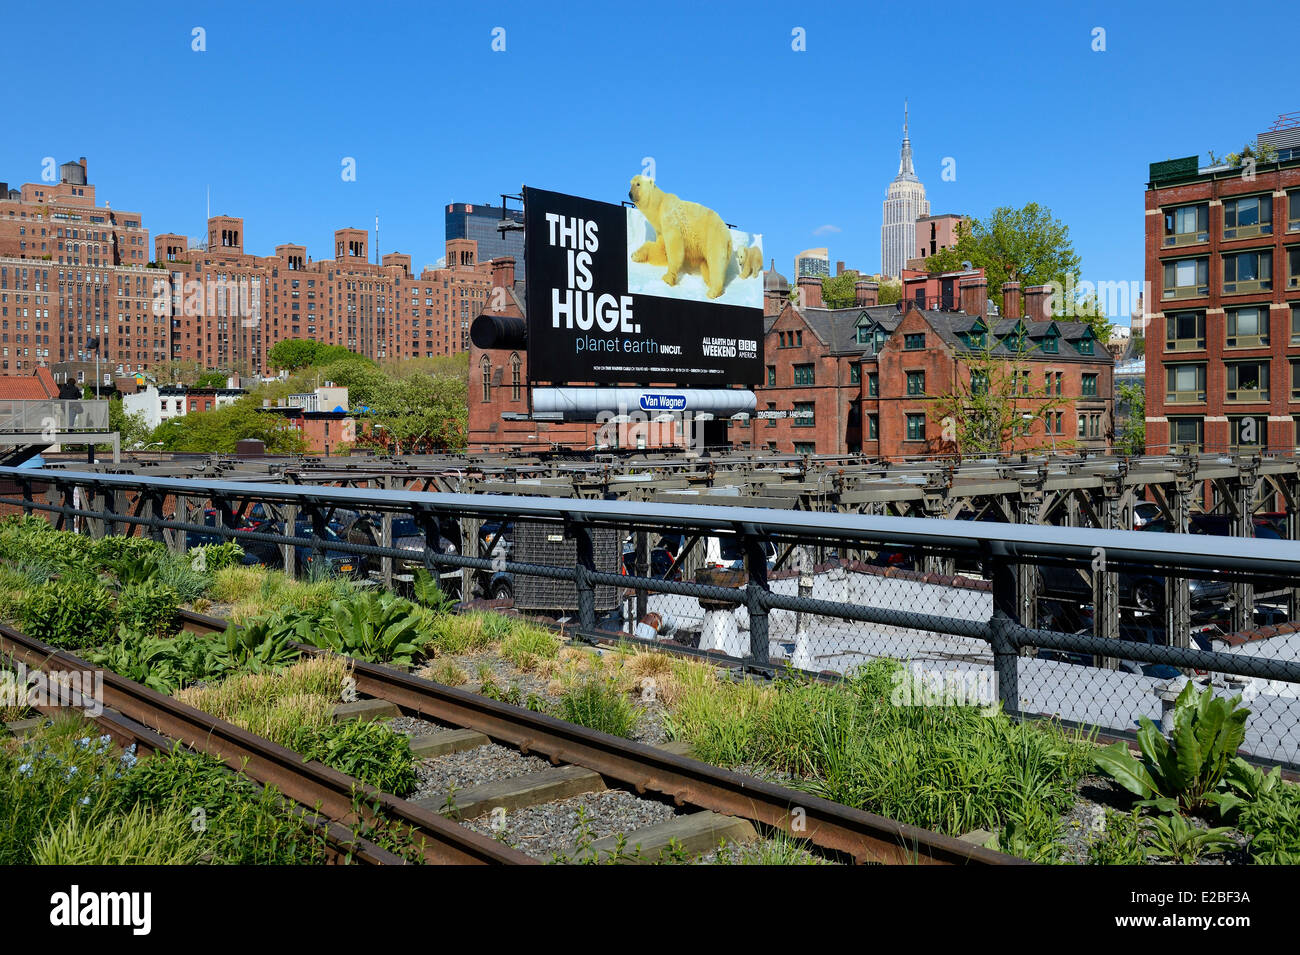 Vereinigte Staaten, New York City, Manhattan, Meatpacking District (Gansevoort Market), die High Line ist ein Park errichtet auf einem Abschnitt der ehemaligen erhöhte Fracht Eisenbahn Sporn; Das Empire State Building im Hintergrund Stockfoto